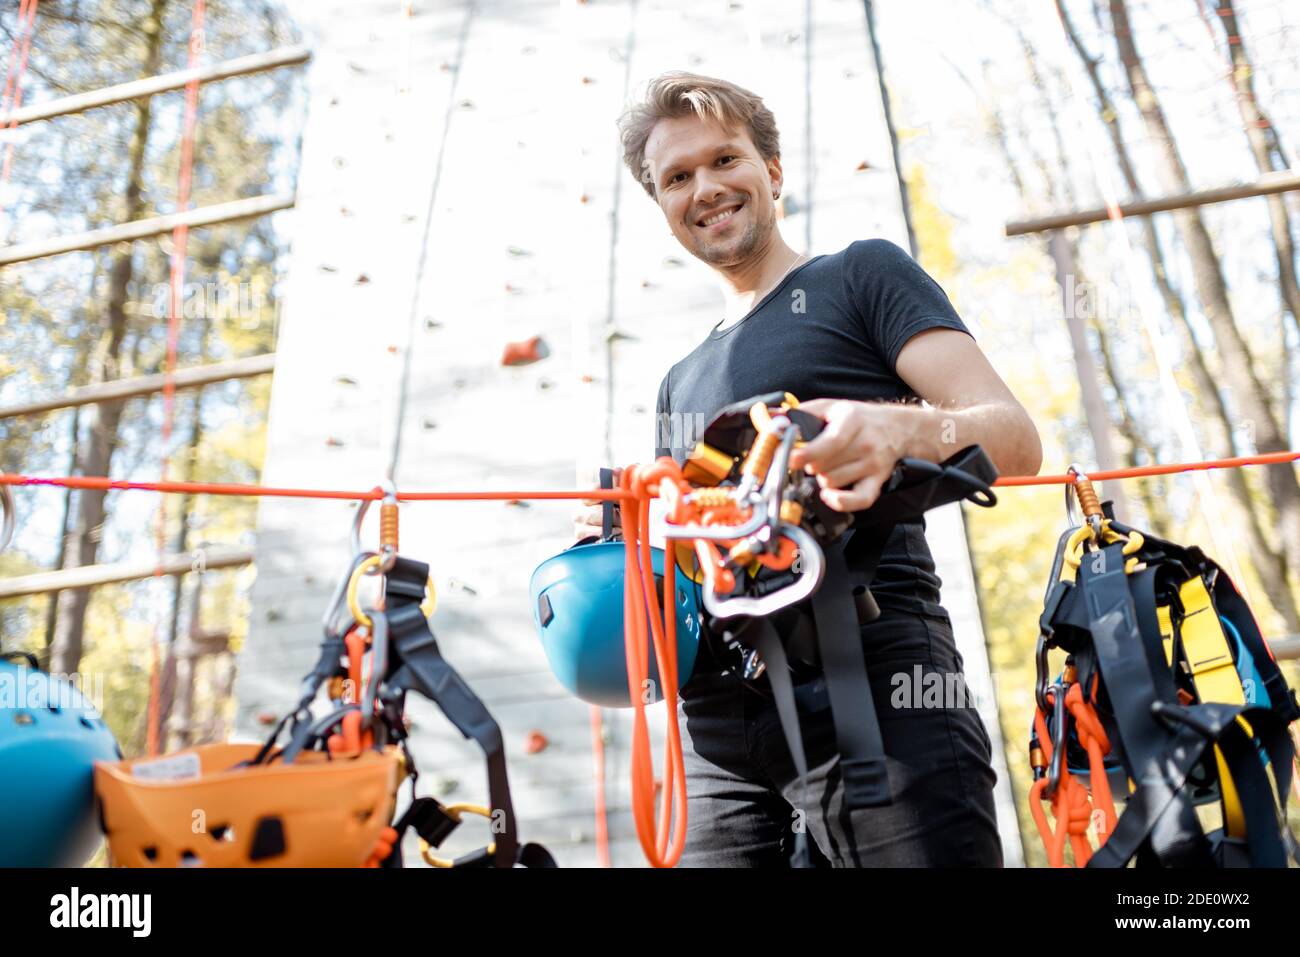 Schöner Mann trägt Sicherheitsausrüstung zum Klettern im Vergnügungspark, Vorbereitung für das Klettern an der Wand Stockfoto